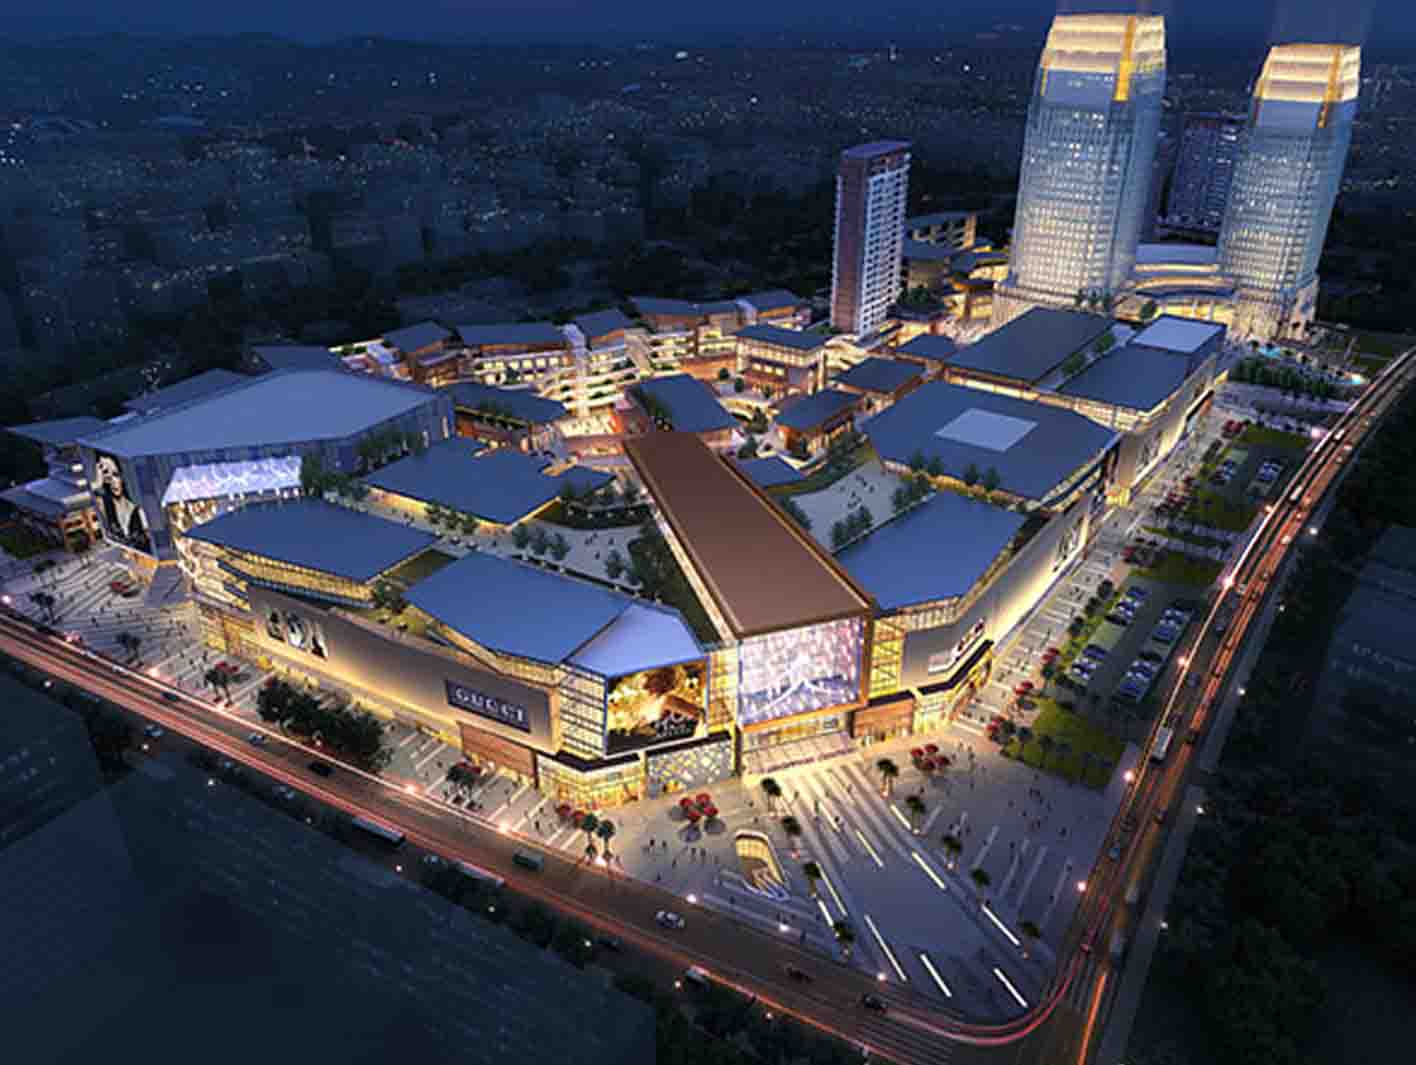 老挝万象国际商业旅游中心项目 - 云南省海外投资有限公司